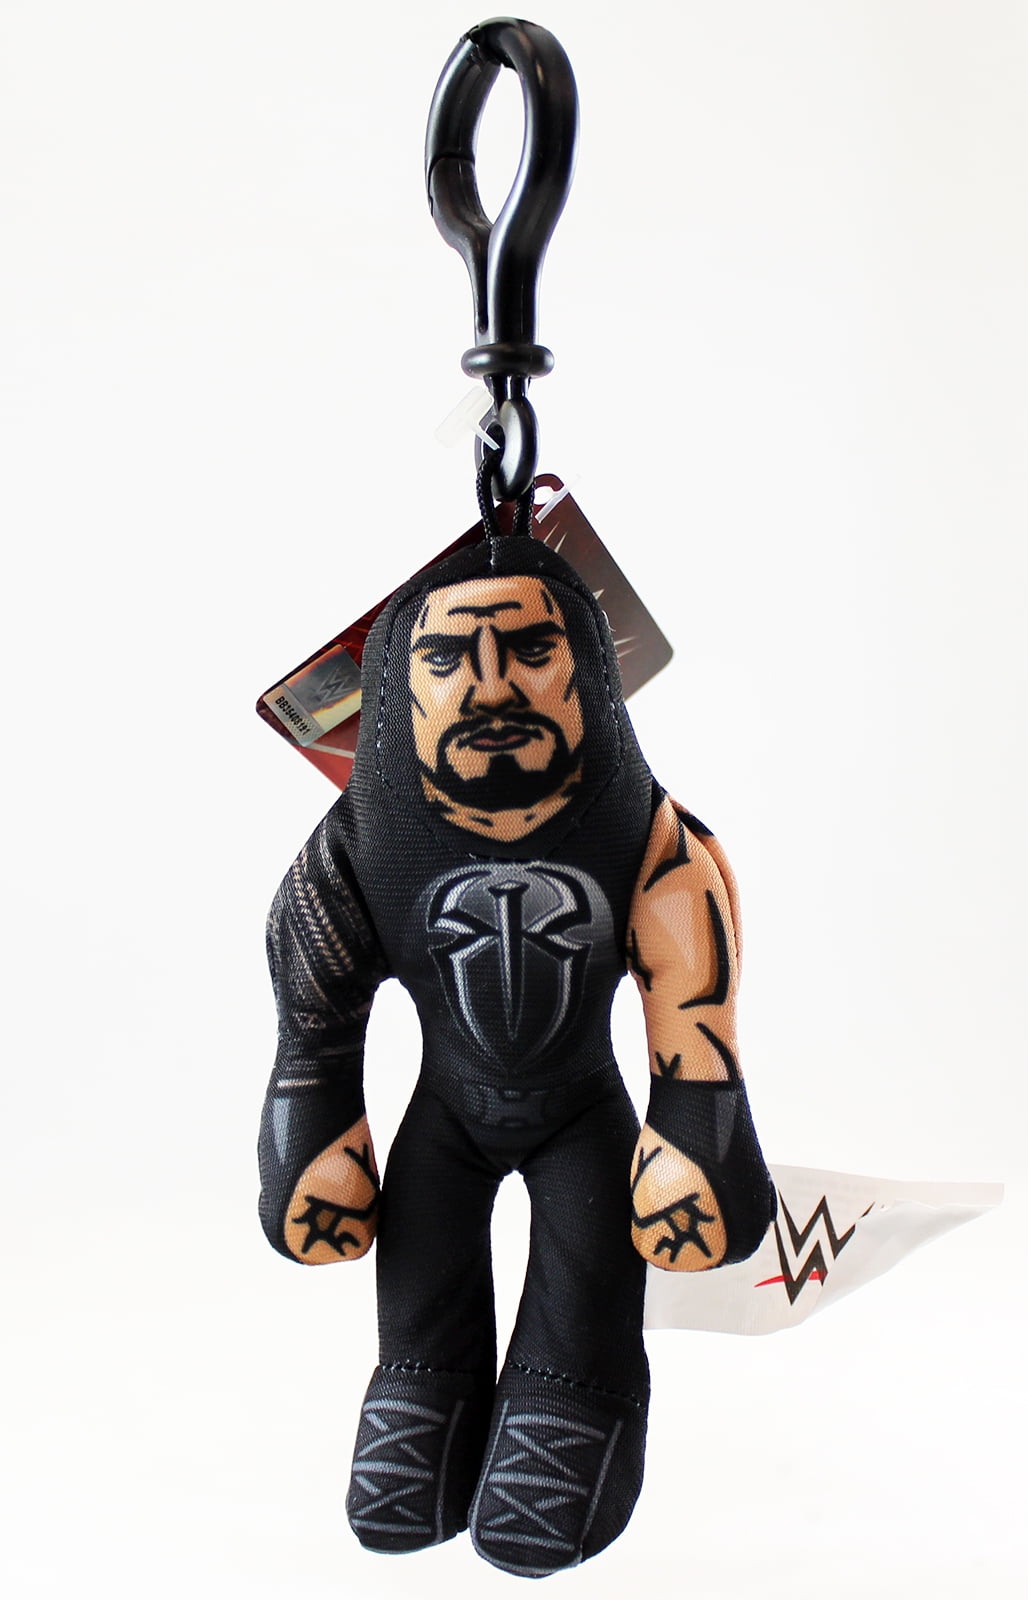 WWE Plush Hangers Roman Reigns WWE Toy Wrestling Action Figure by Jakks Pacific 